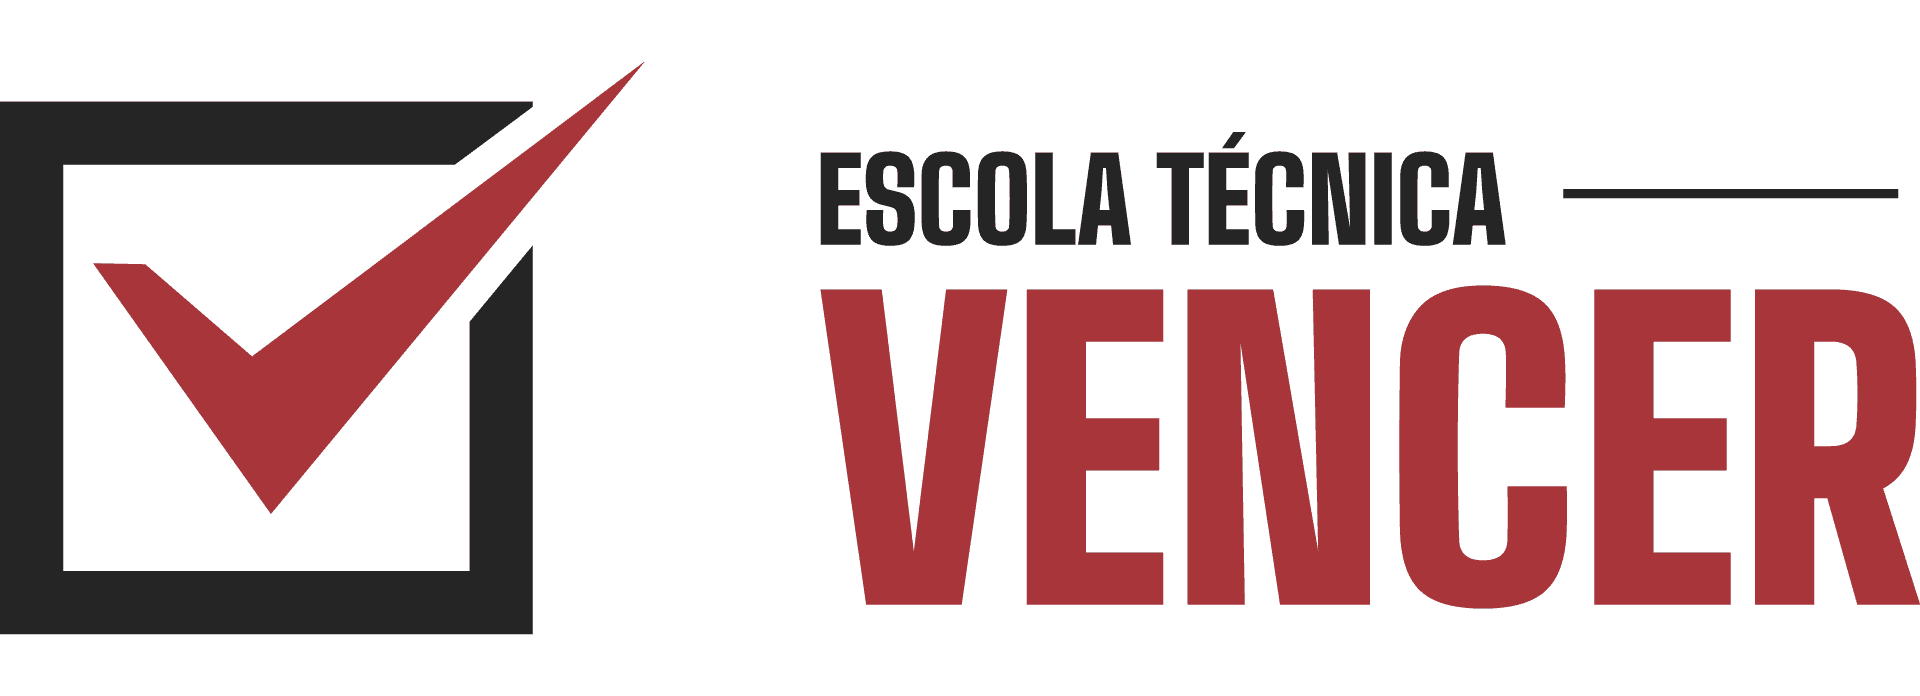 VENCER! | Escola Técnica